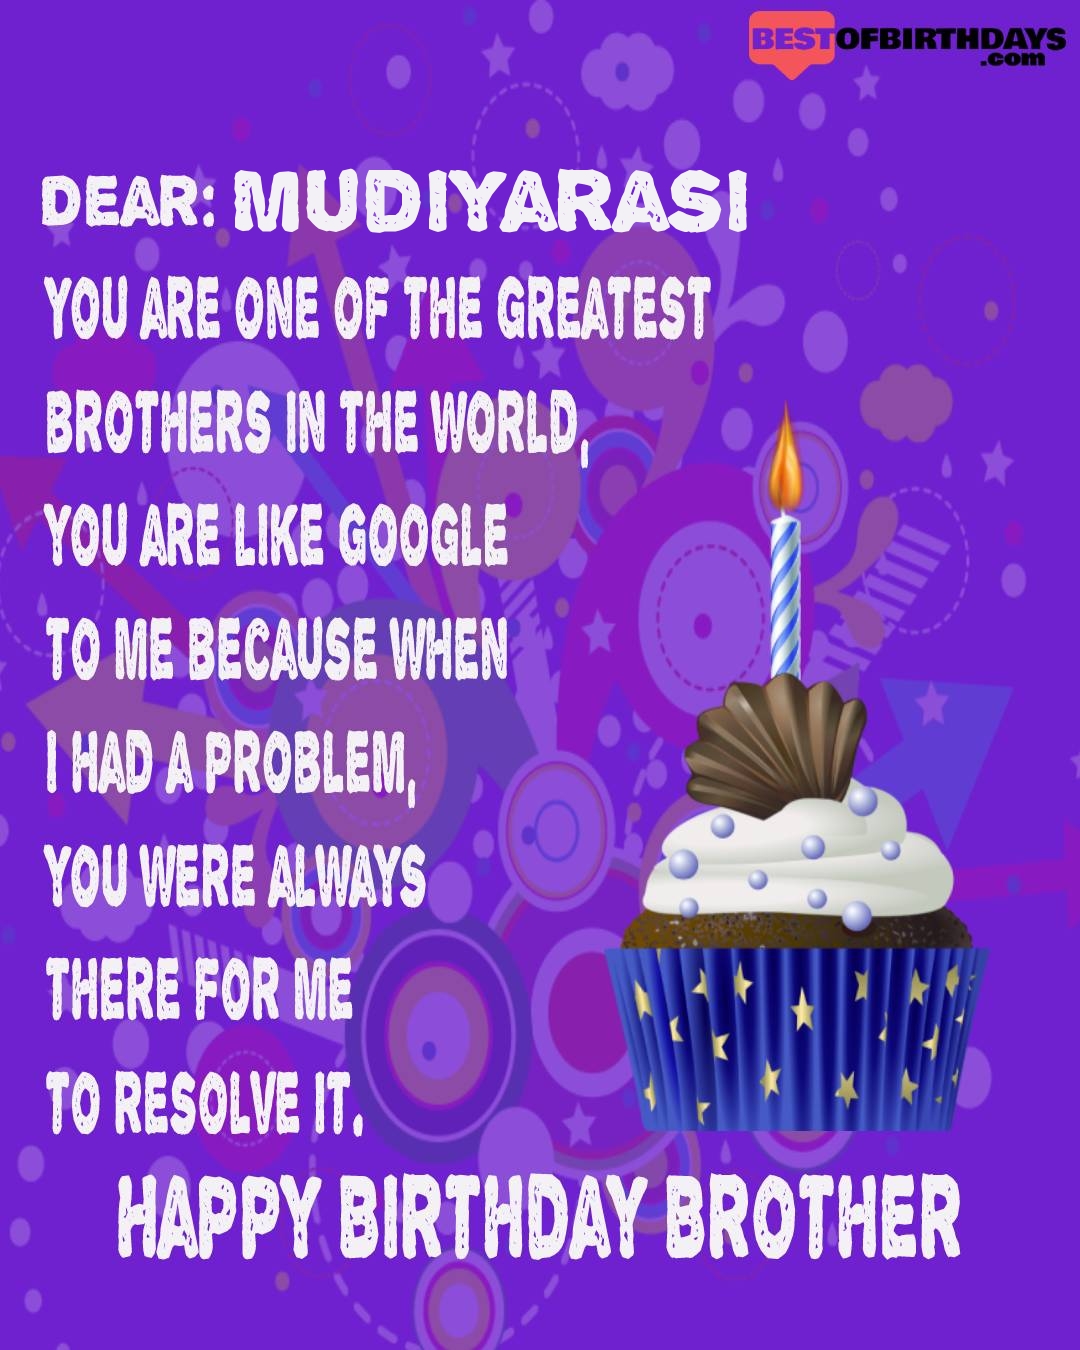 Happy birthday mudiyarasi bhai brother bro